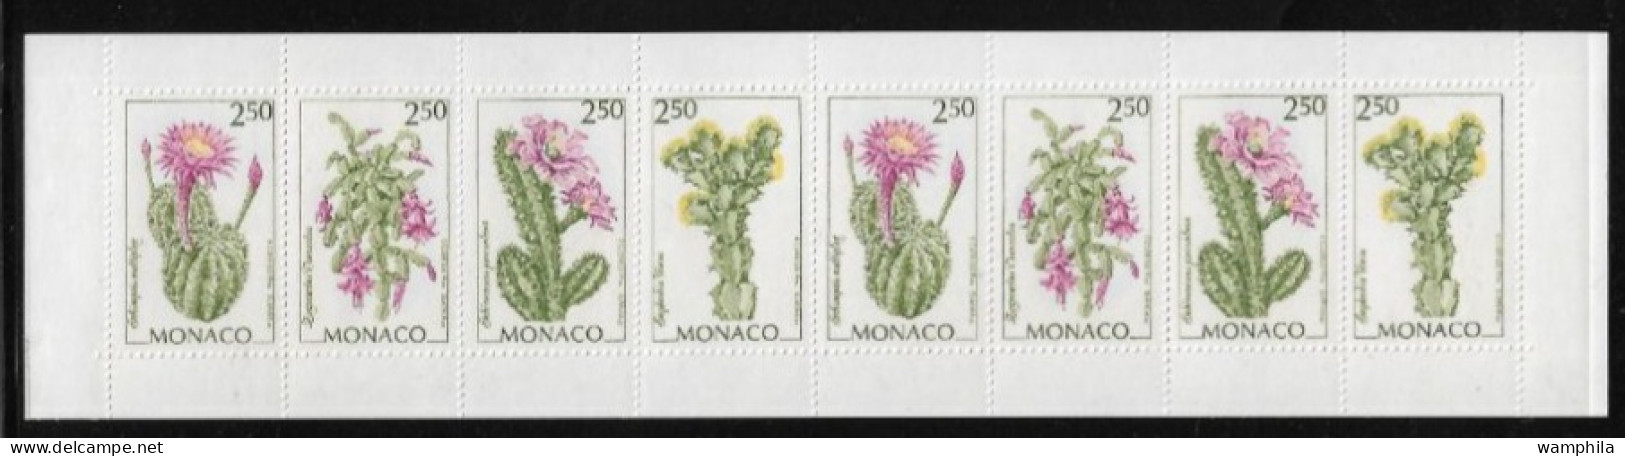 Monaco 1993. Carnet N°9, Fleurs, Cactus, Etc... - Booklets